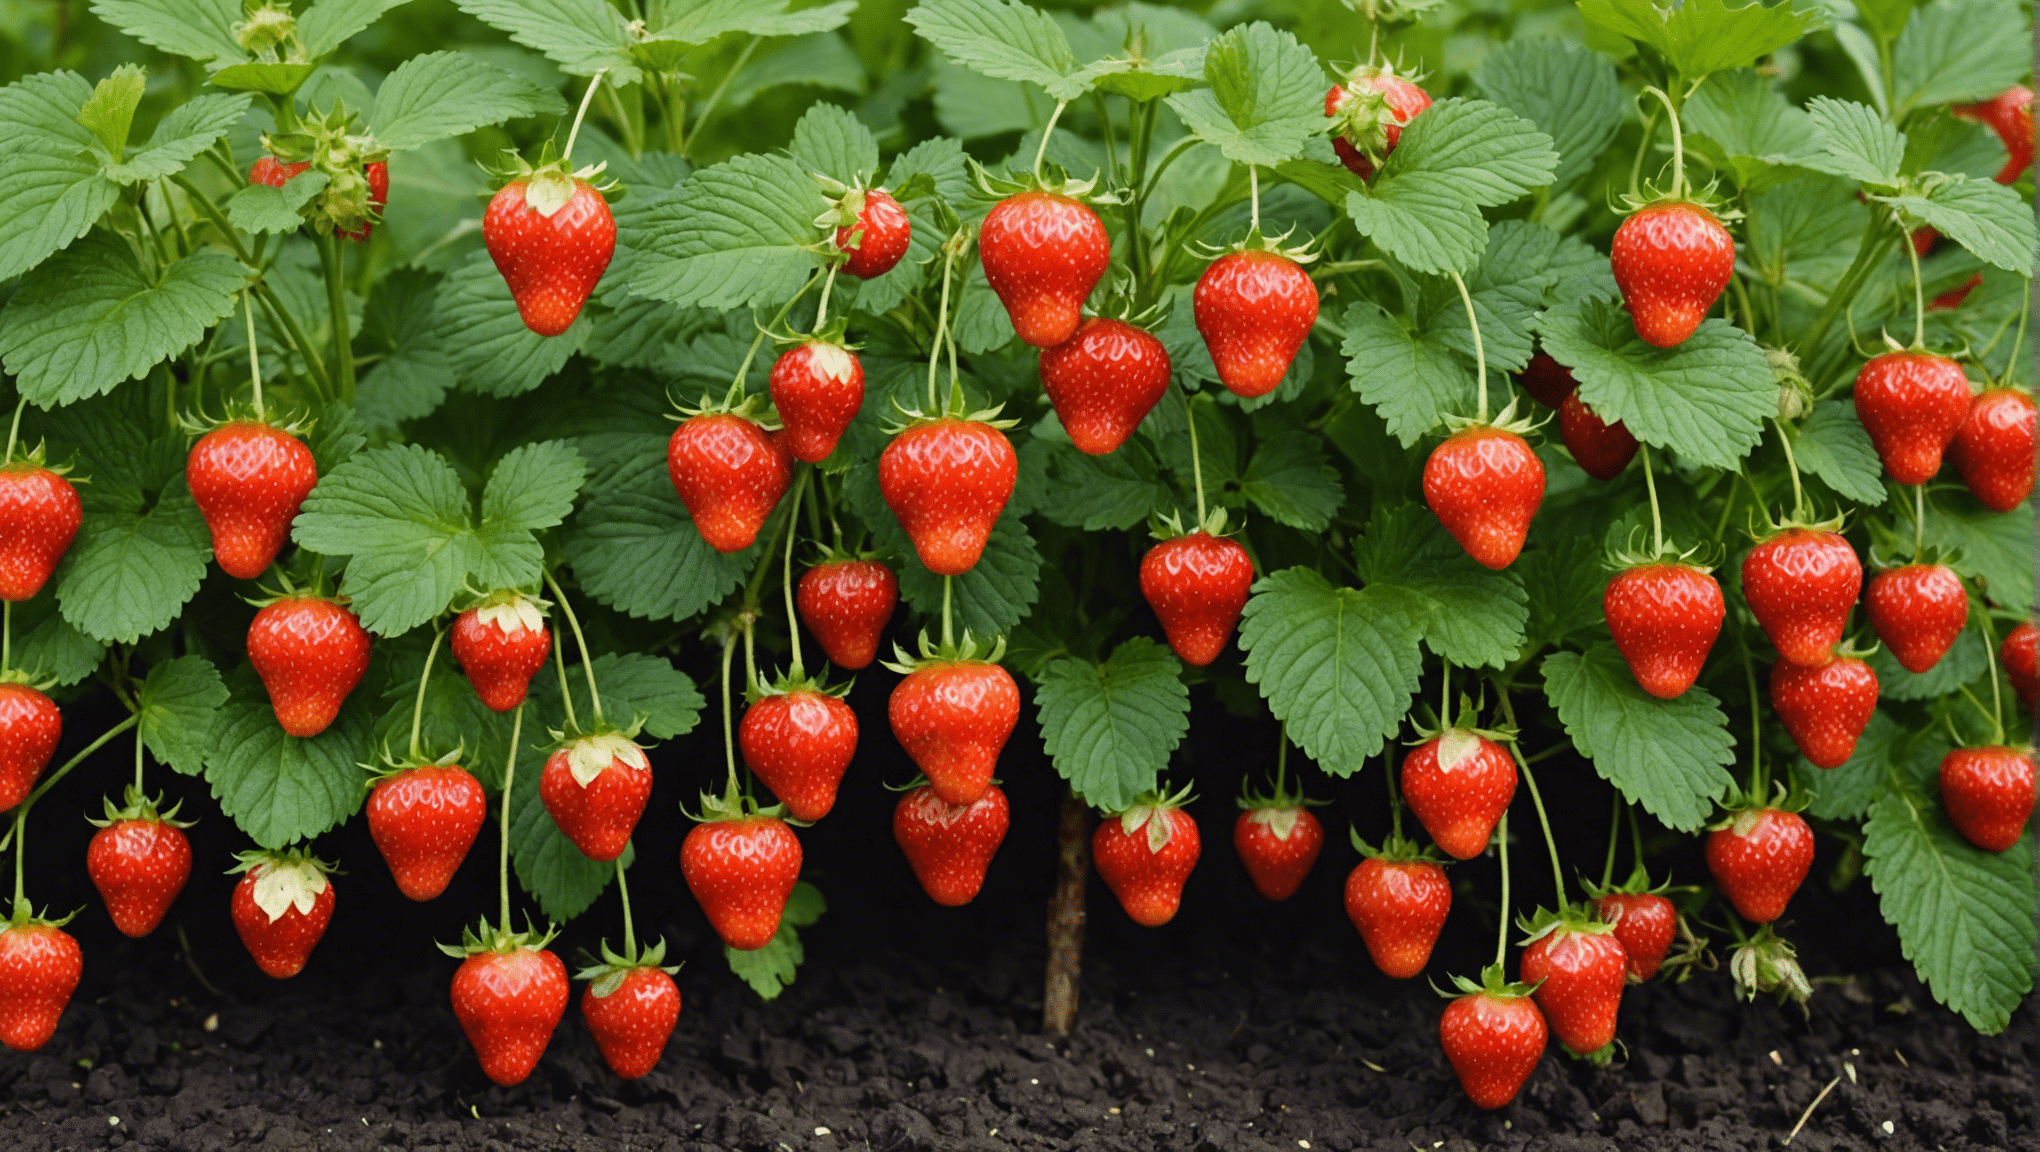 découvrez comment cultiver des fraisiers et obtenir une récolte abondante de fraises succulentes en suivant ce guide pratique. des astuces et conseils pour des fraises énormes et délicieuses!